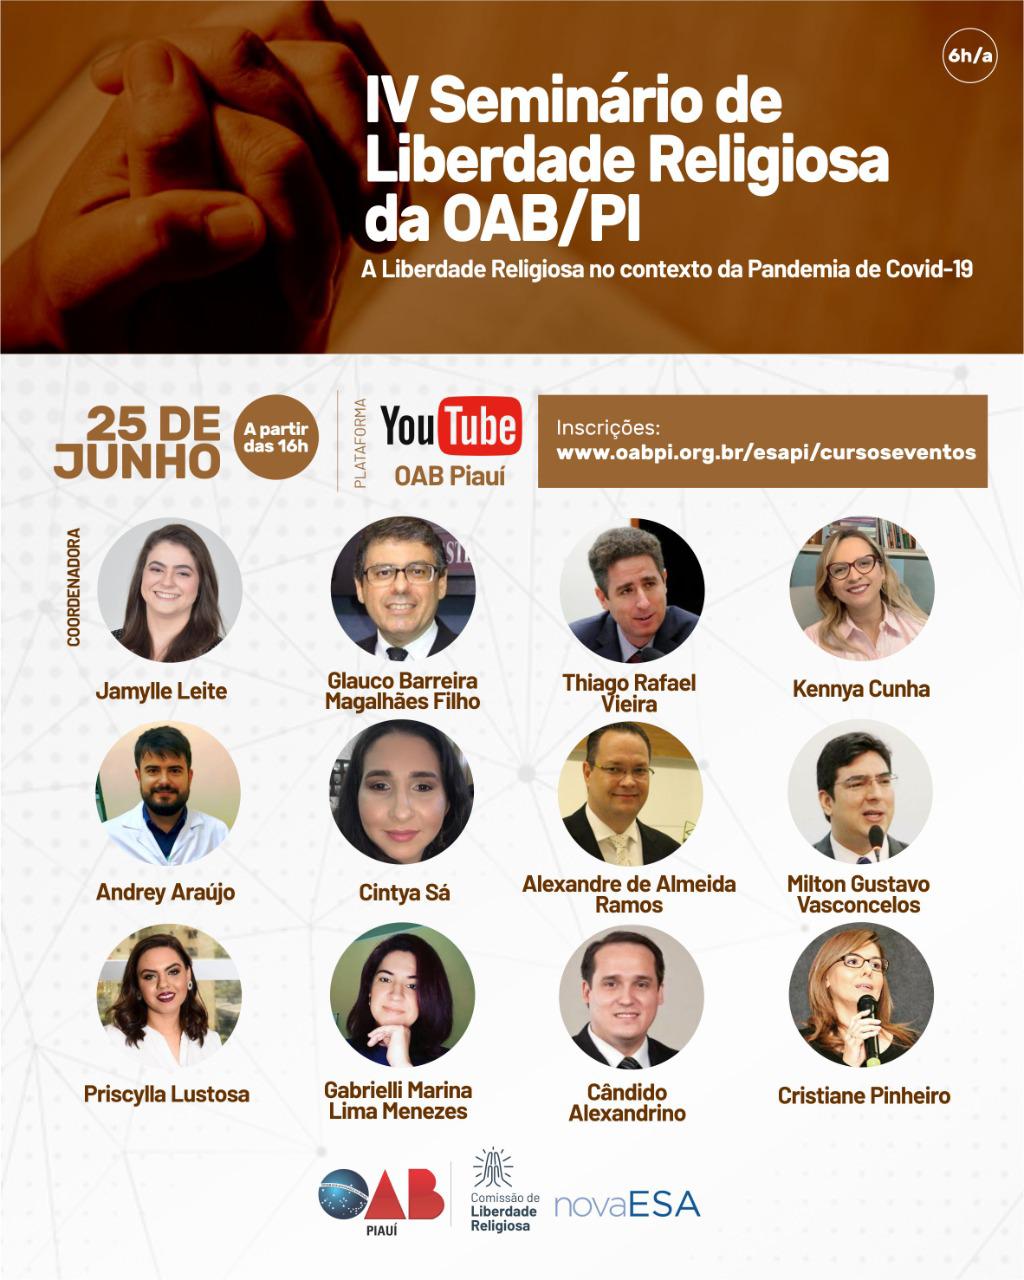 OAB Piauí realizará o IV Seminário de Liberdade Religiosa no dia 25 de junho